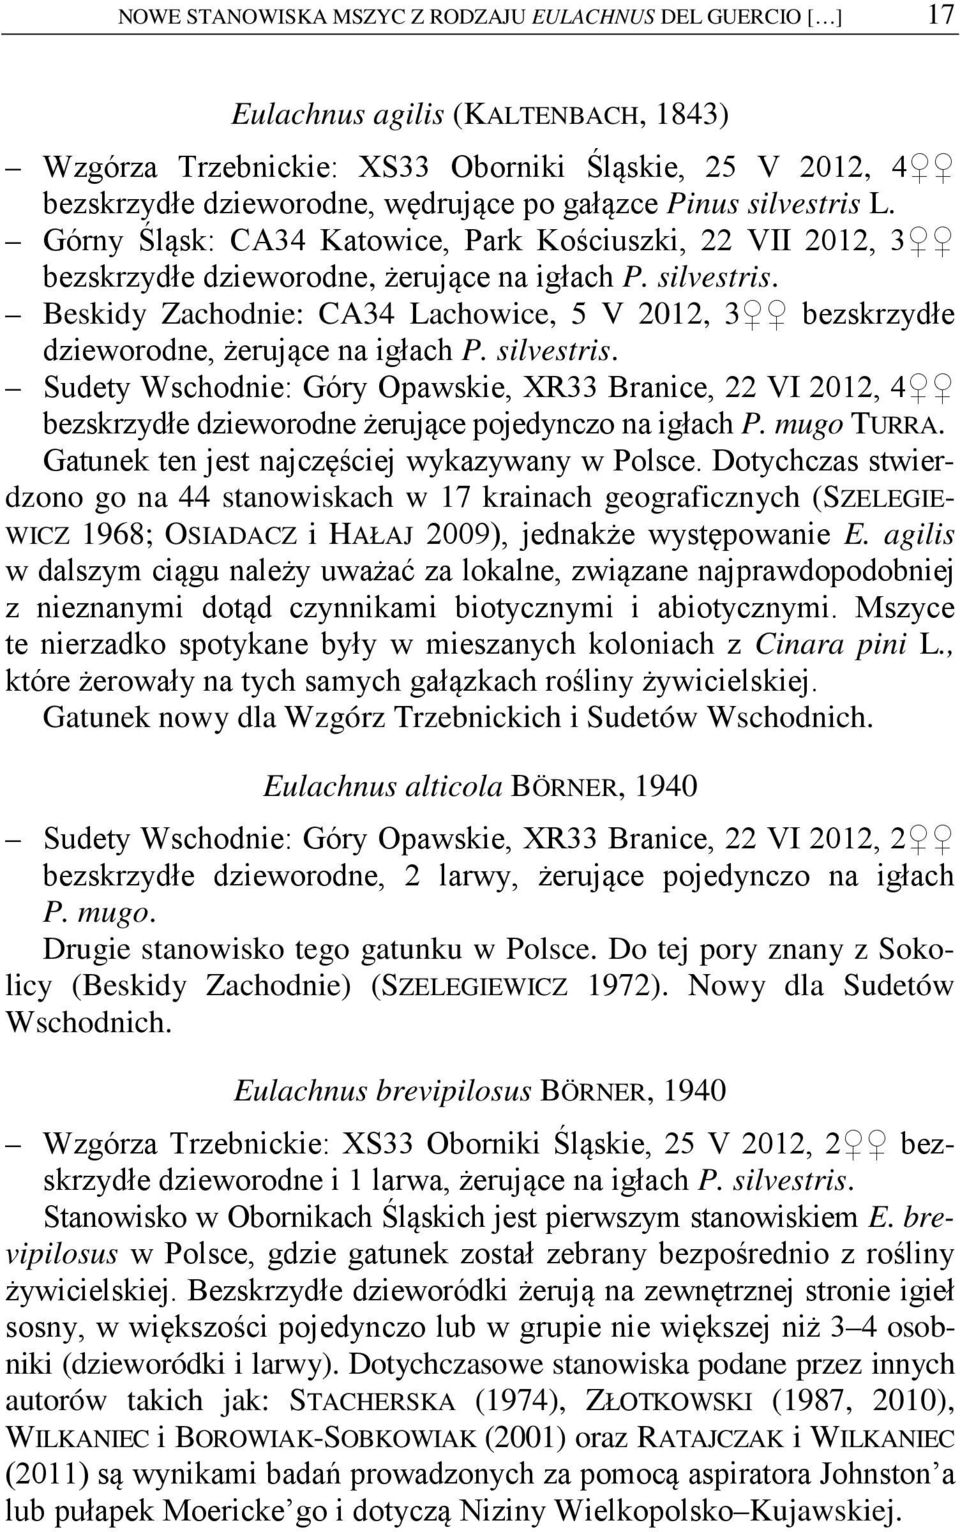 silvestris. Sudety Wschodnie: Góry Opawskie, XR33 Branice, 22 VI 2012, 4 bezskrzydłe dzieworodne żerujące pojedynczo na igłach P. mugo TURRA. Gatunek ten jest najczęściej wykazywany w Polsce.